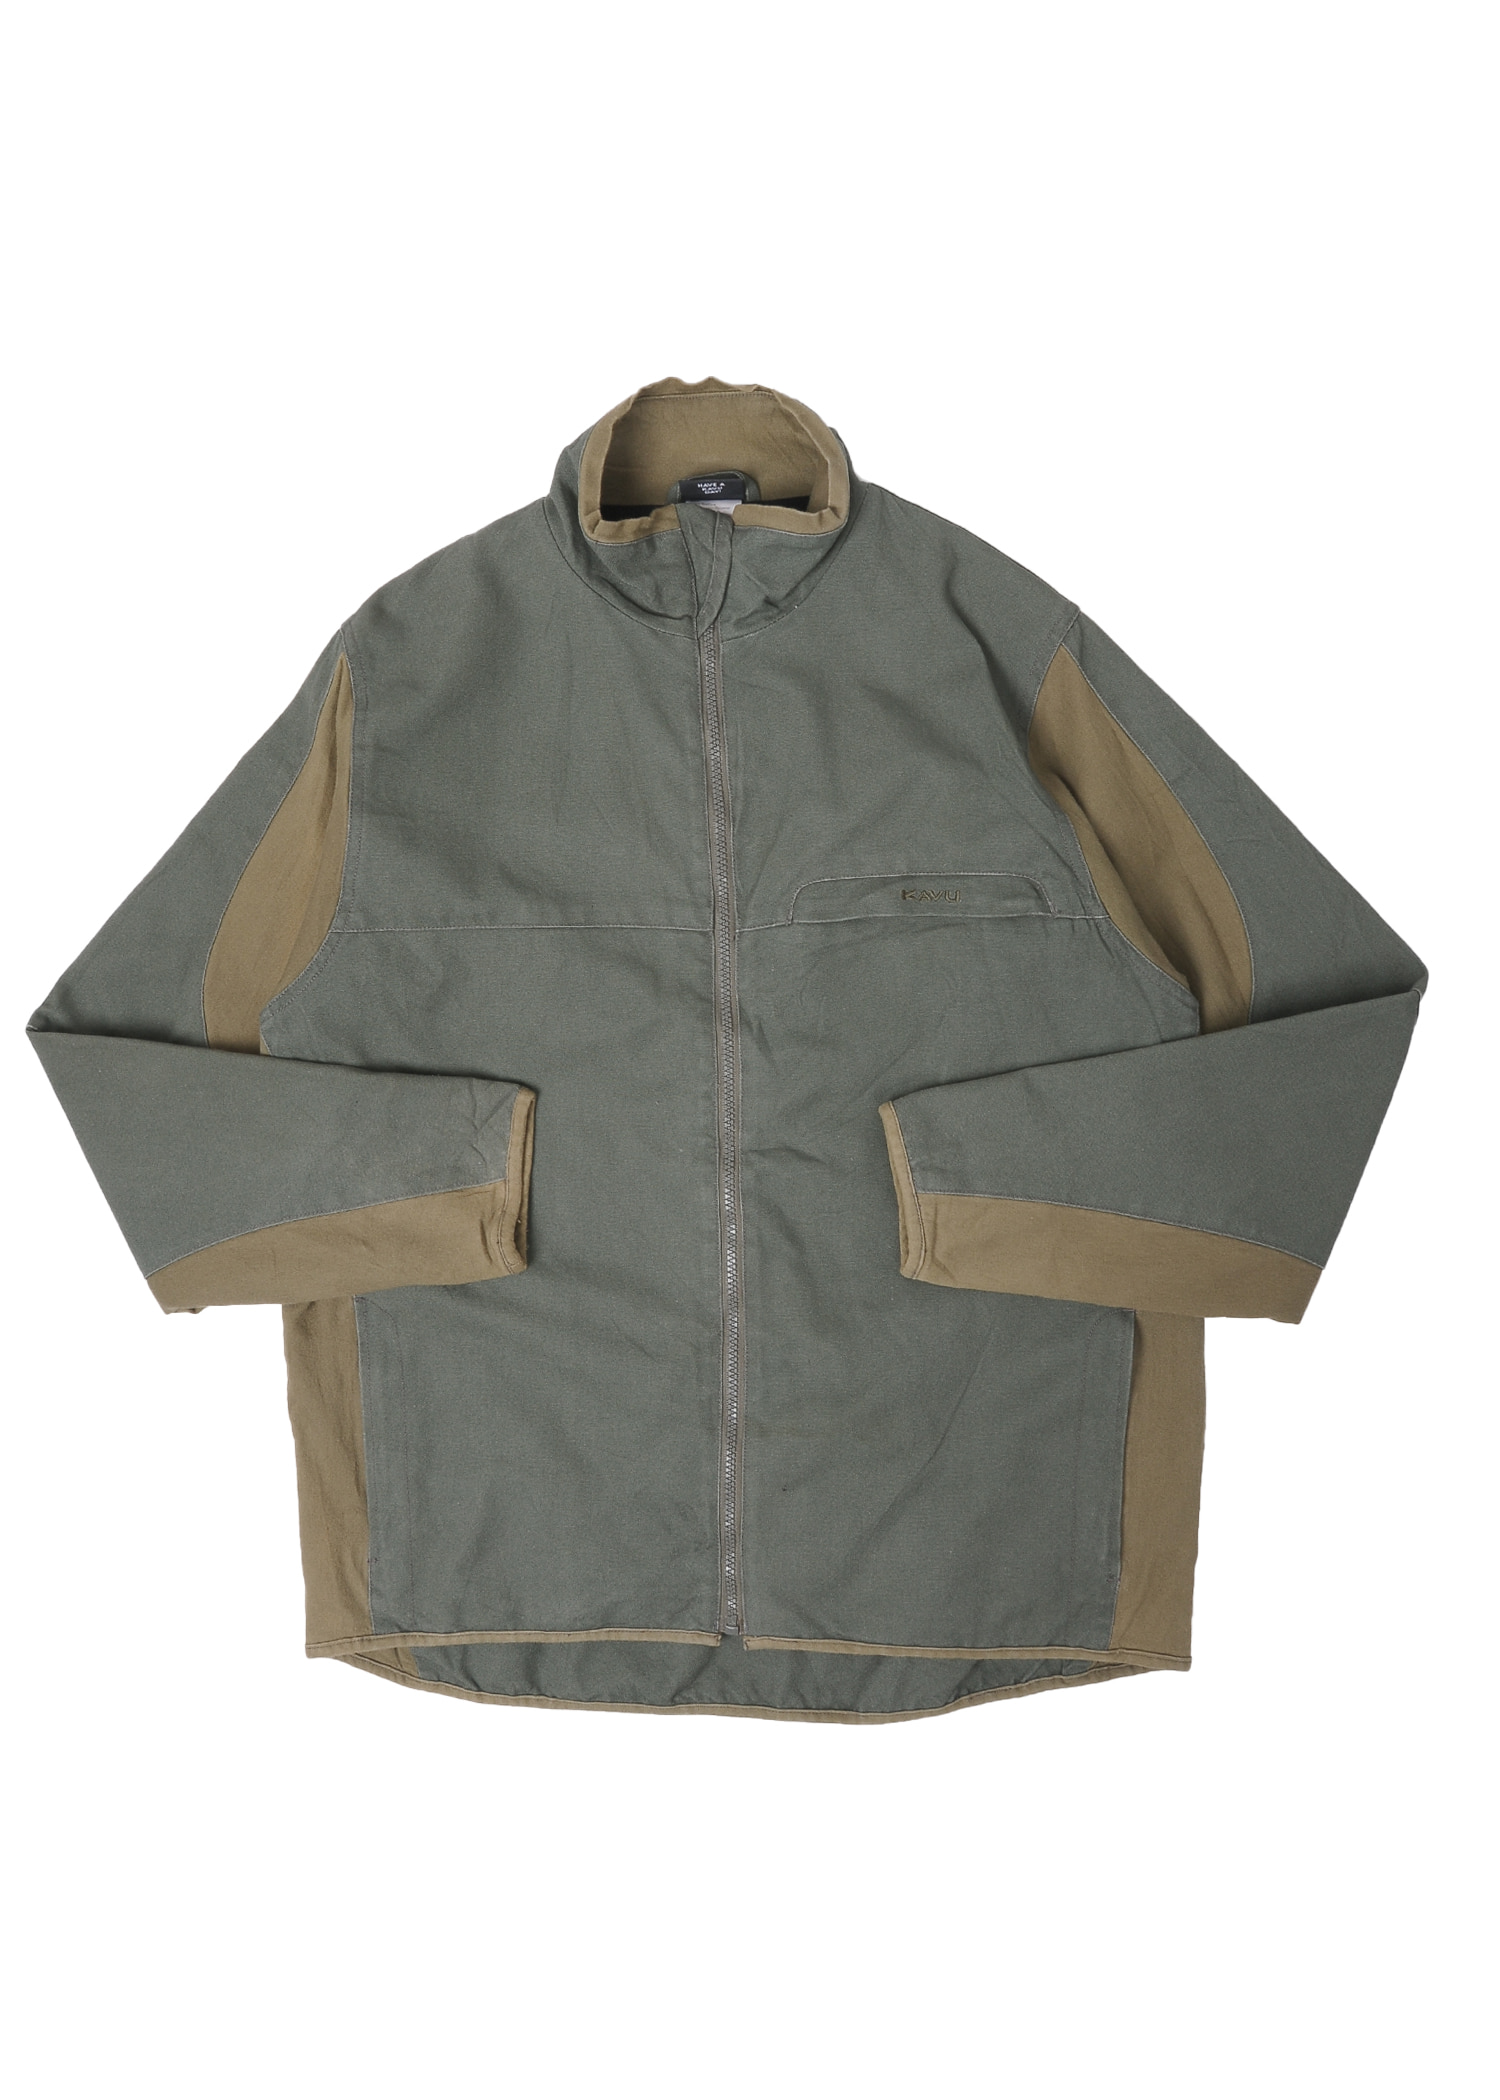 KAVU zip-up jacket